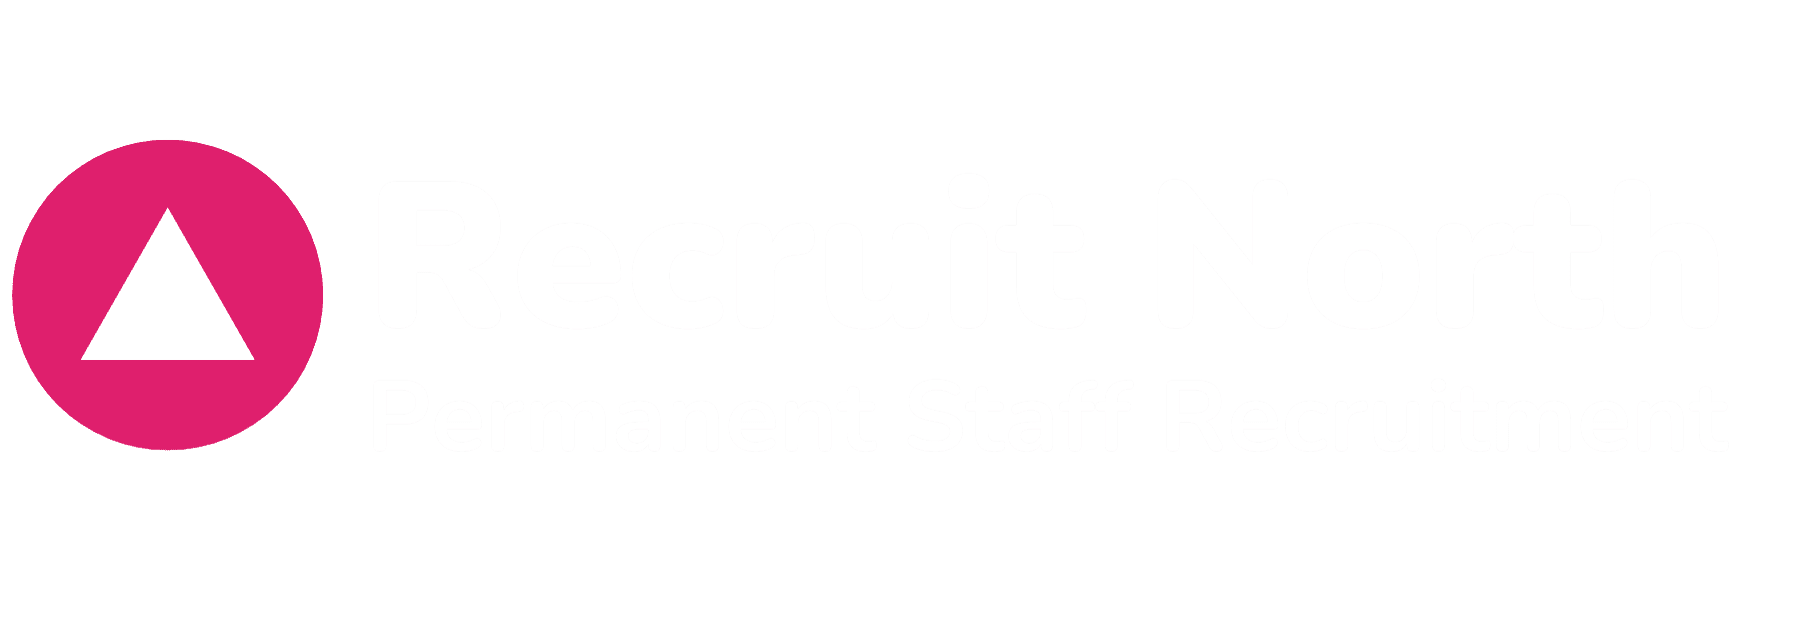 Recruit North